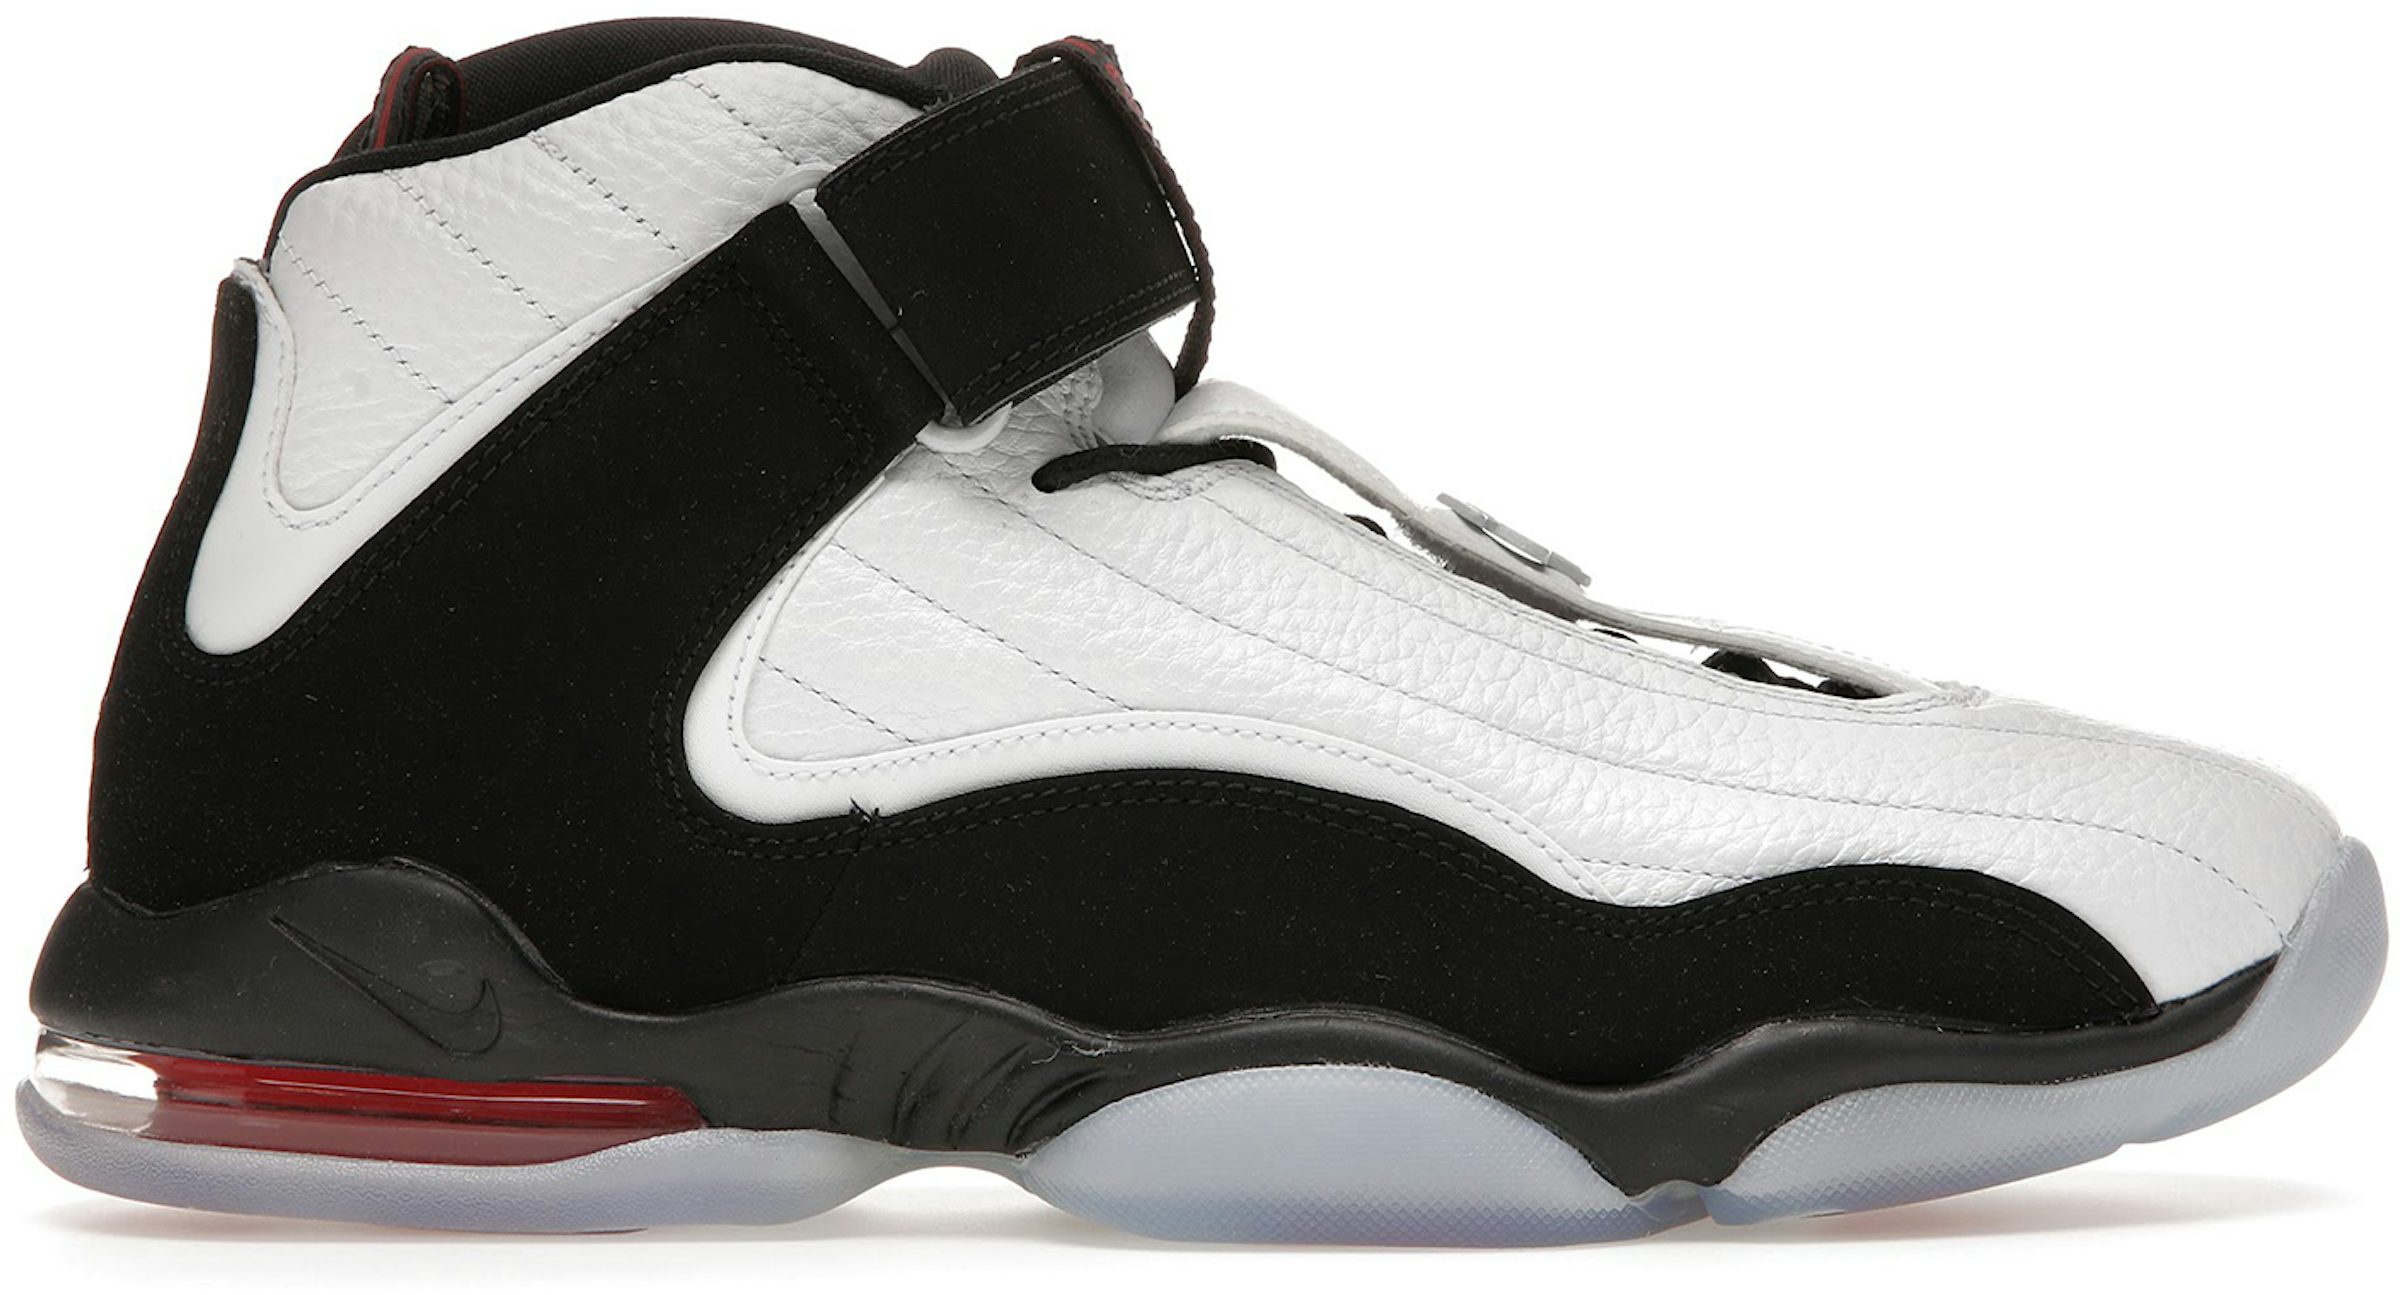 Vintage 1998 Nike Air Penny Hardaway IV Basketball Shoes OG Size 9.5 Jordan